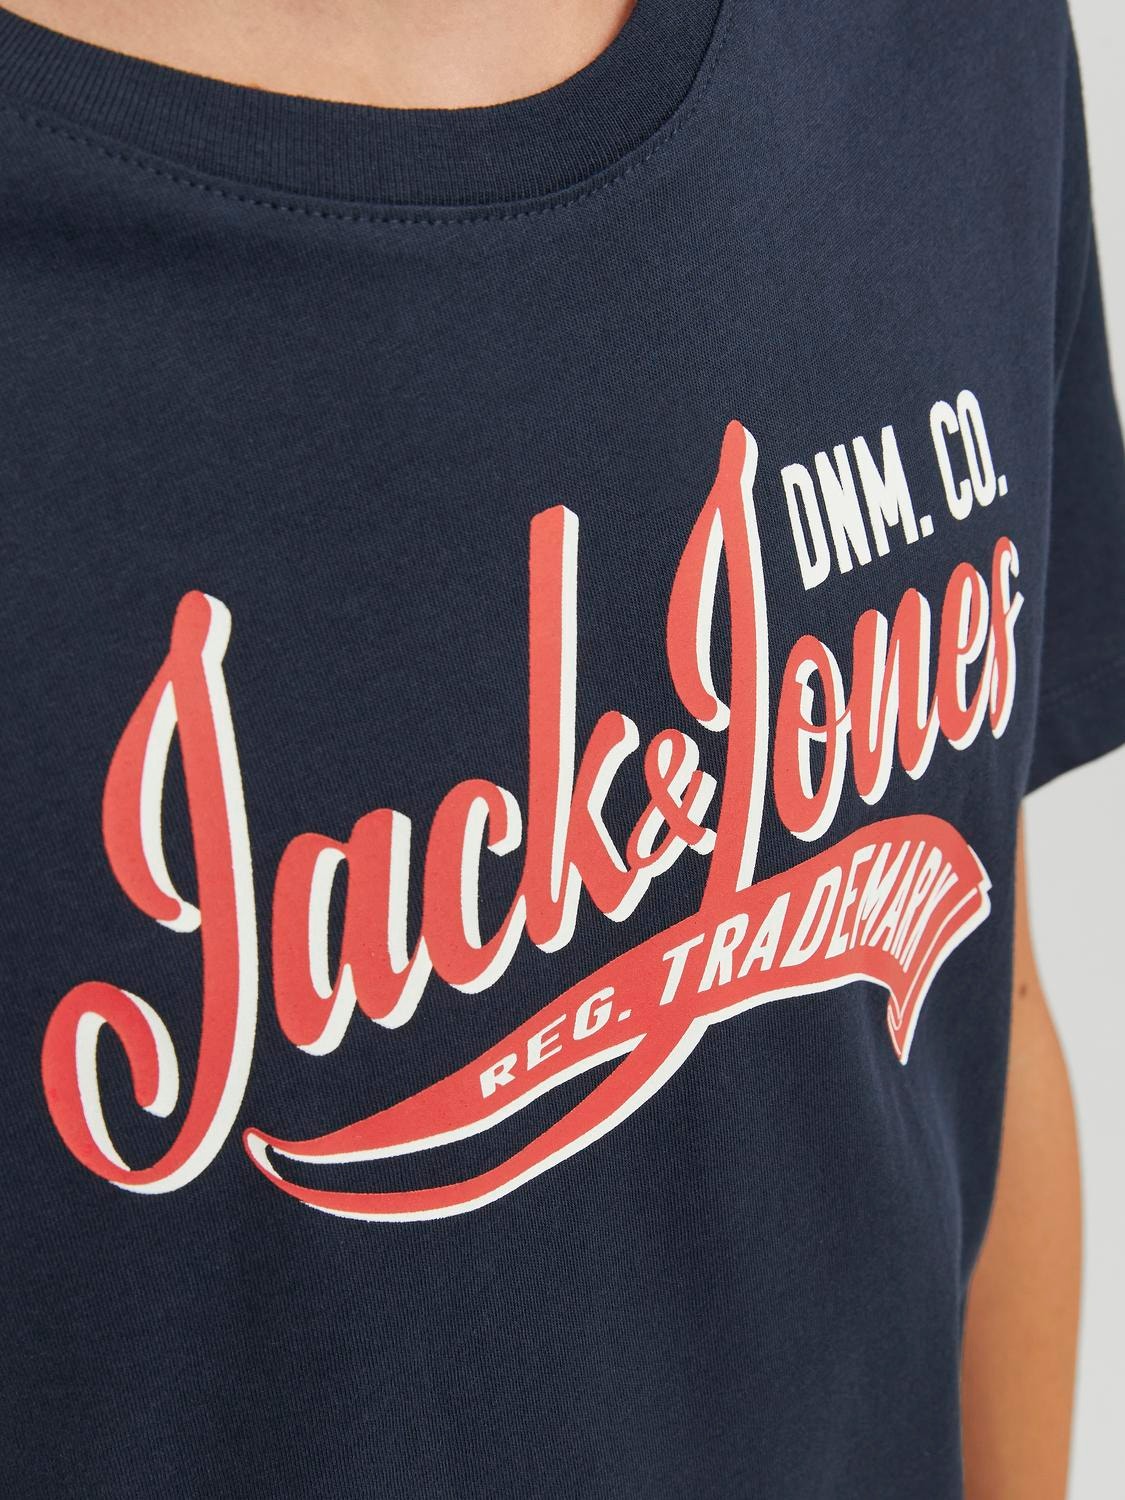 Jack & Jones T-shirt Estampar Para meninos -Navy Blazer - 12237367